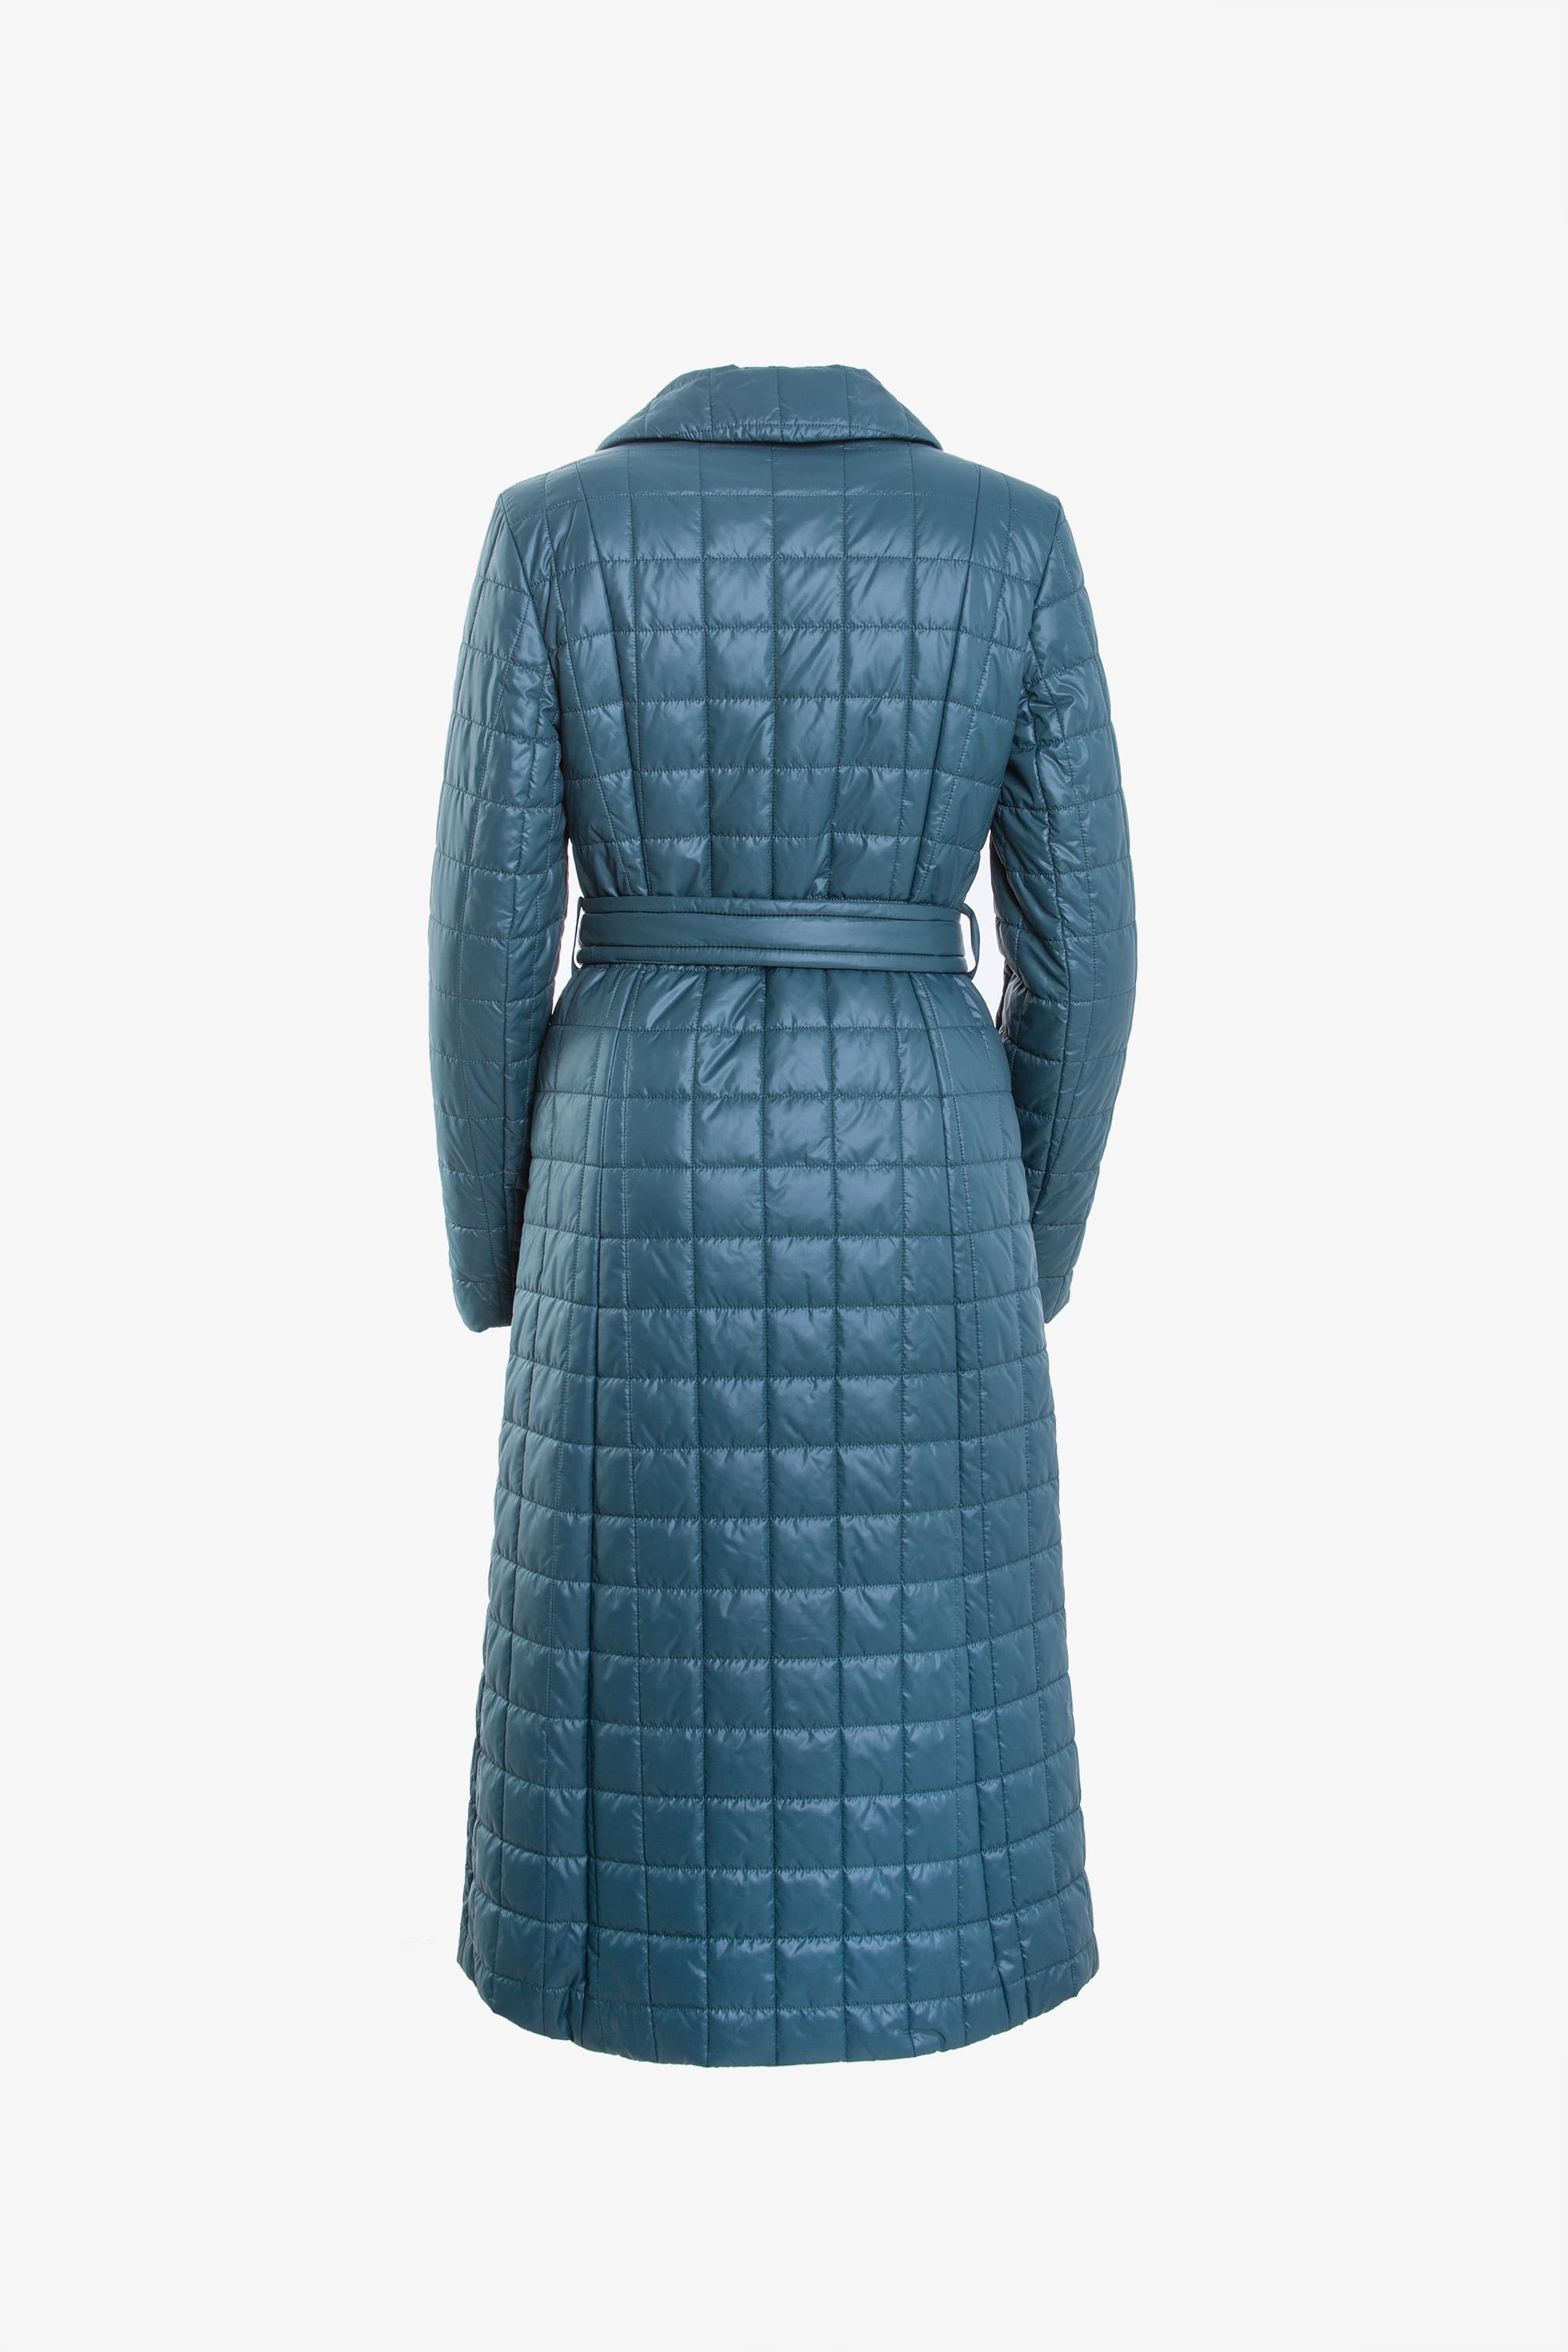 Пальто женское плащевое утепленное 5-11475-1. Фото 3.